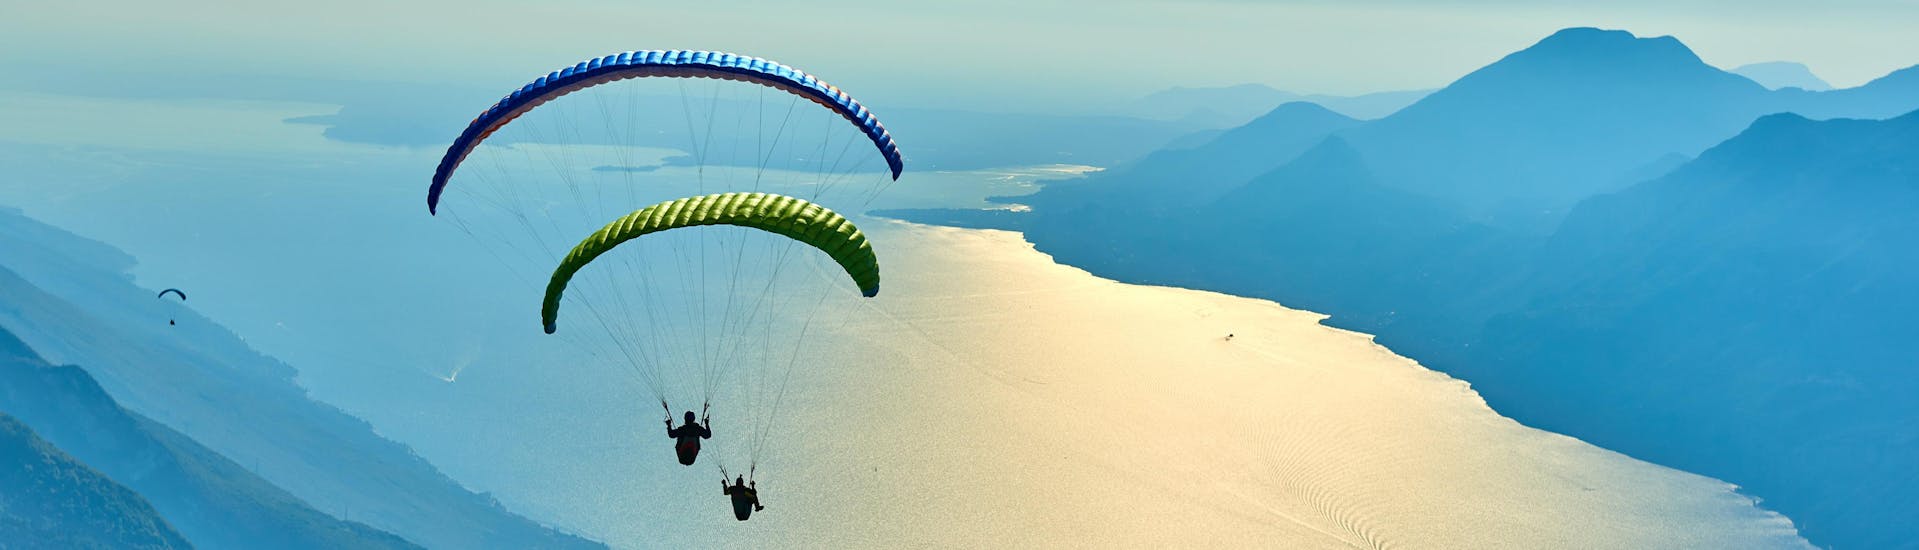 Un parapentiste est émerveillé par le paysage lors d'un vol en parapente biplace dans la célèbre destination de parapente Malcesine.